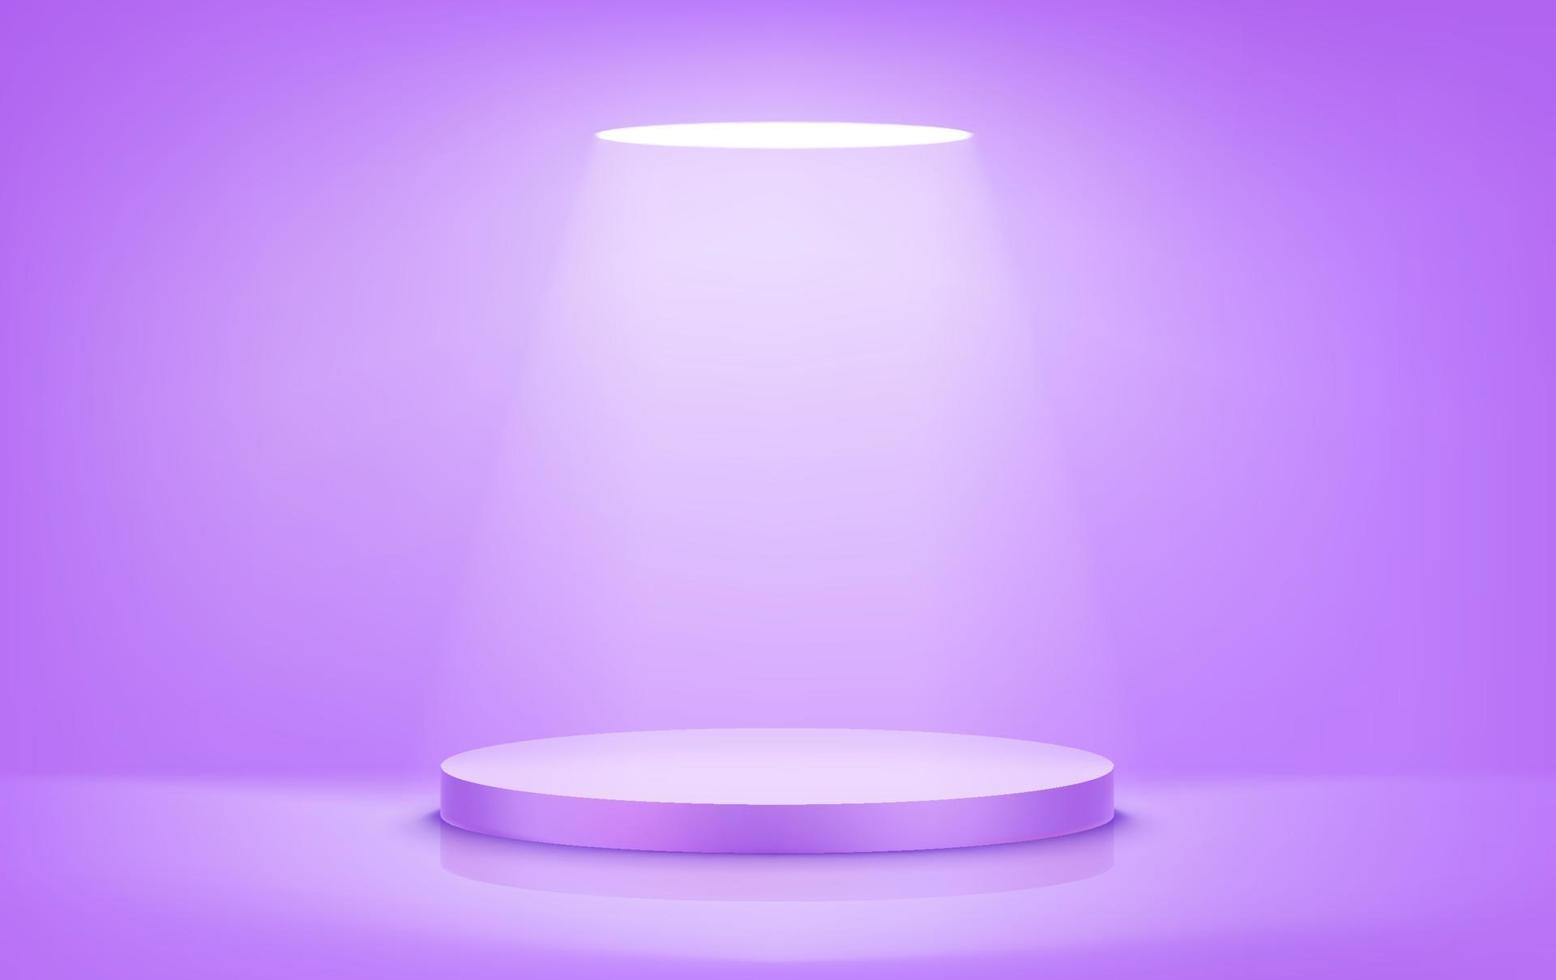 verlicht violet rond podium met fel licht. realistische vectorillustratie vector